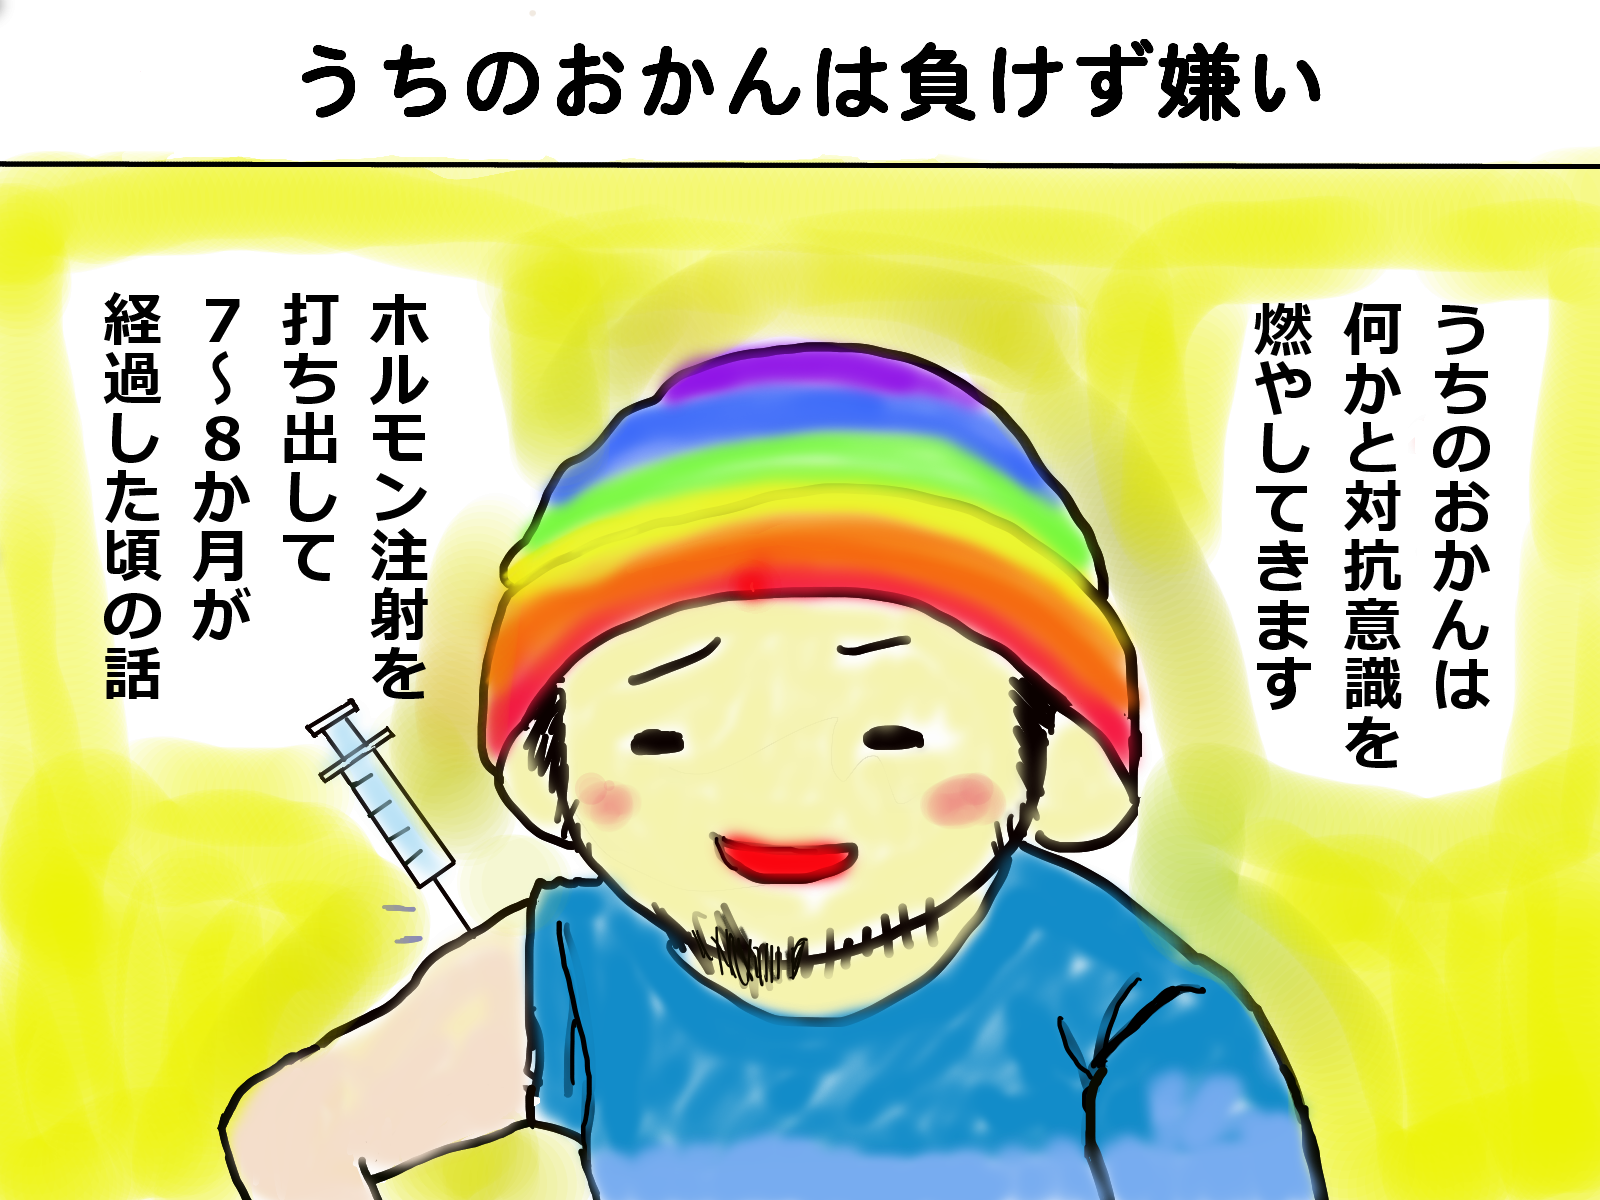 トランスジェンダーftmあるある４コマ漫画 Over The Rainbow For Lgbt 福岡